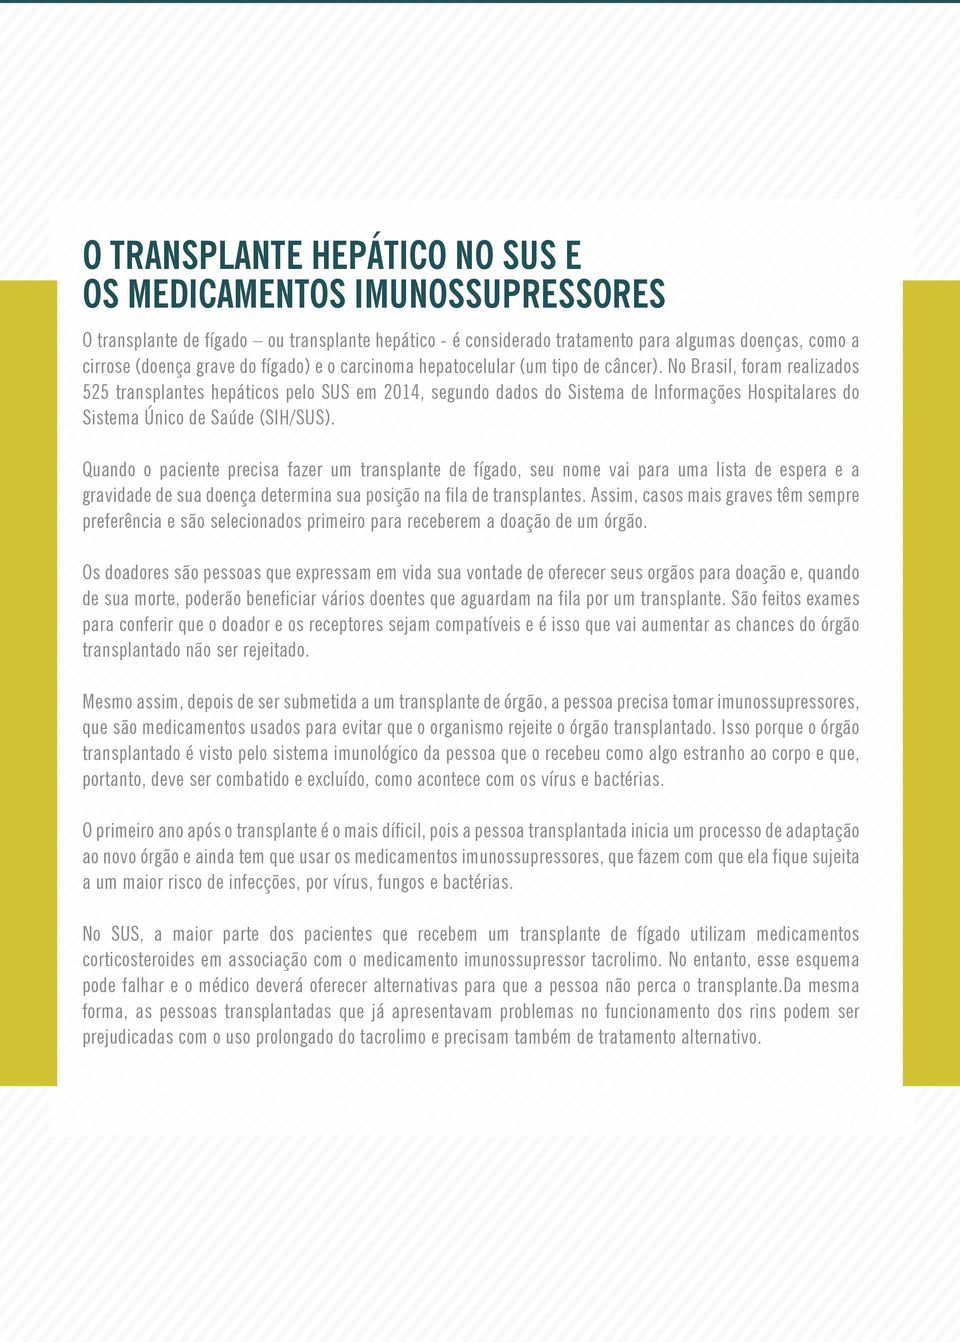 No Brasil, foram realizados 525 transplantes hepáticos pelo SUS em 2014, segundo dados do Sistema de Informações Hospitalares do Sistema Único de Saúde (SIH/SUS).